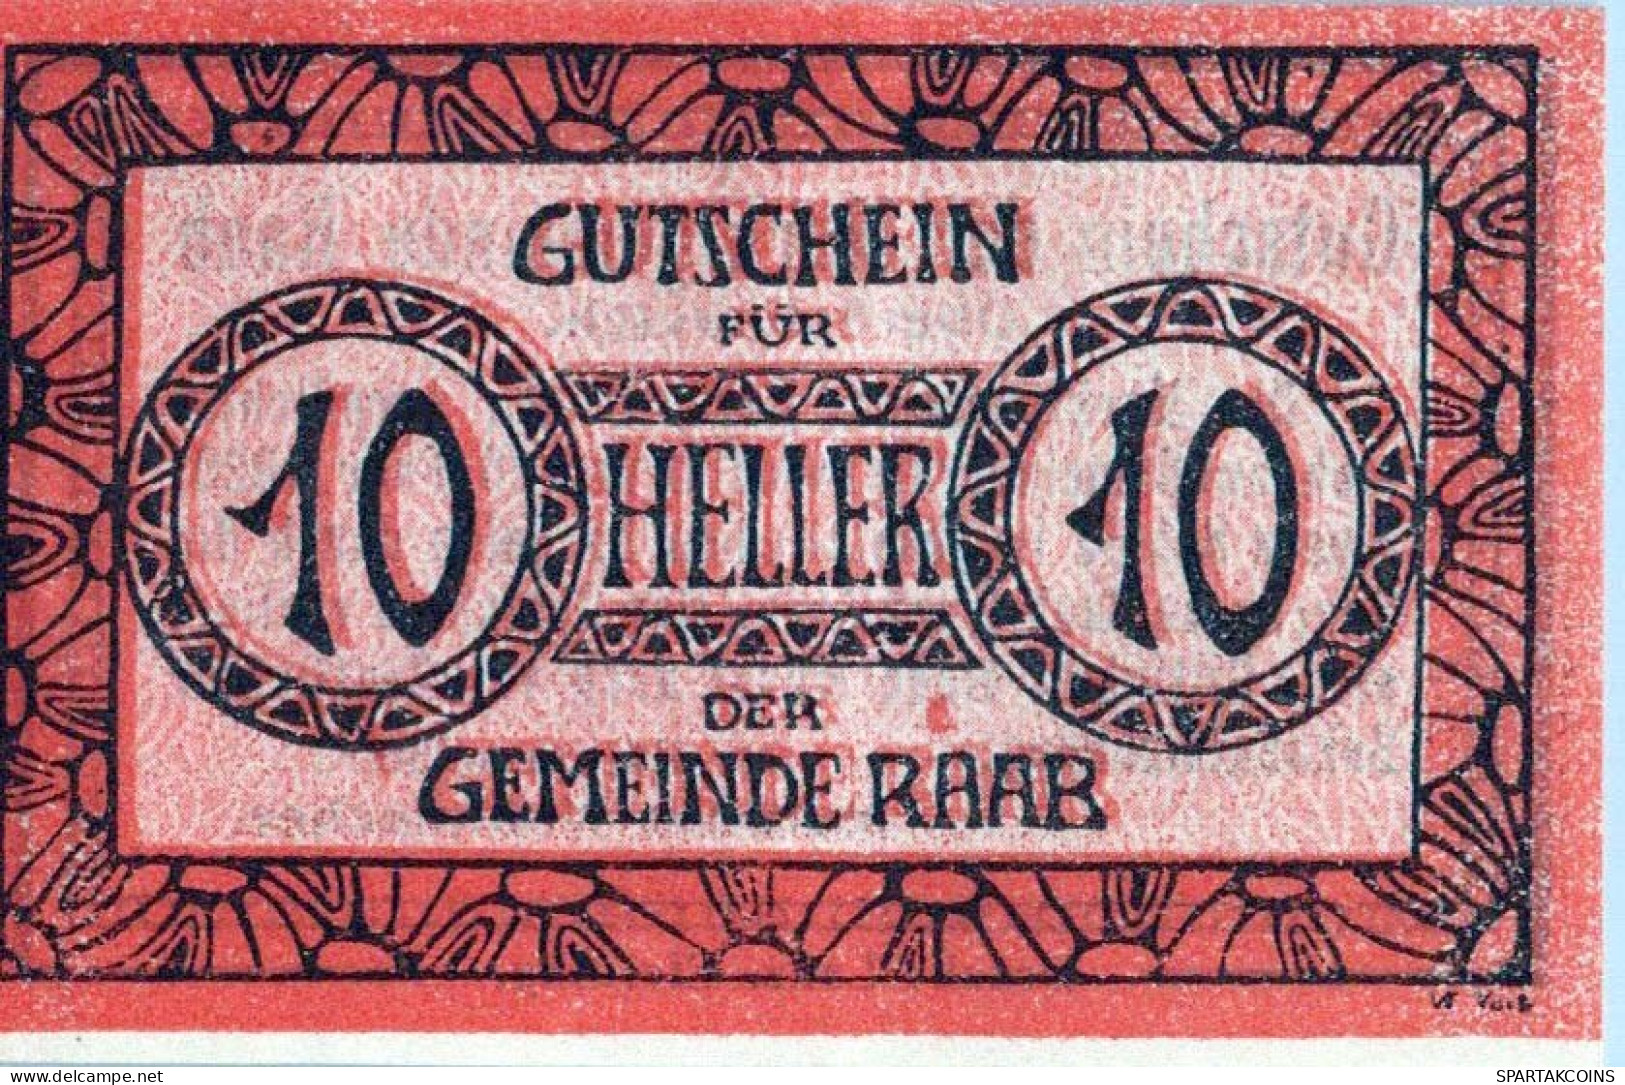 10 HELLER 1920 Stadt RAAB Oberösterreich Österreich UNC Österreich Notgeld Banknote #PH451 - Lokale Ausgaben